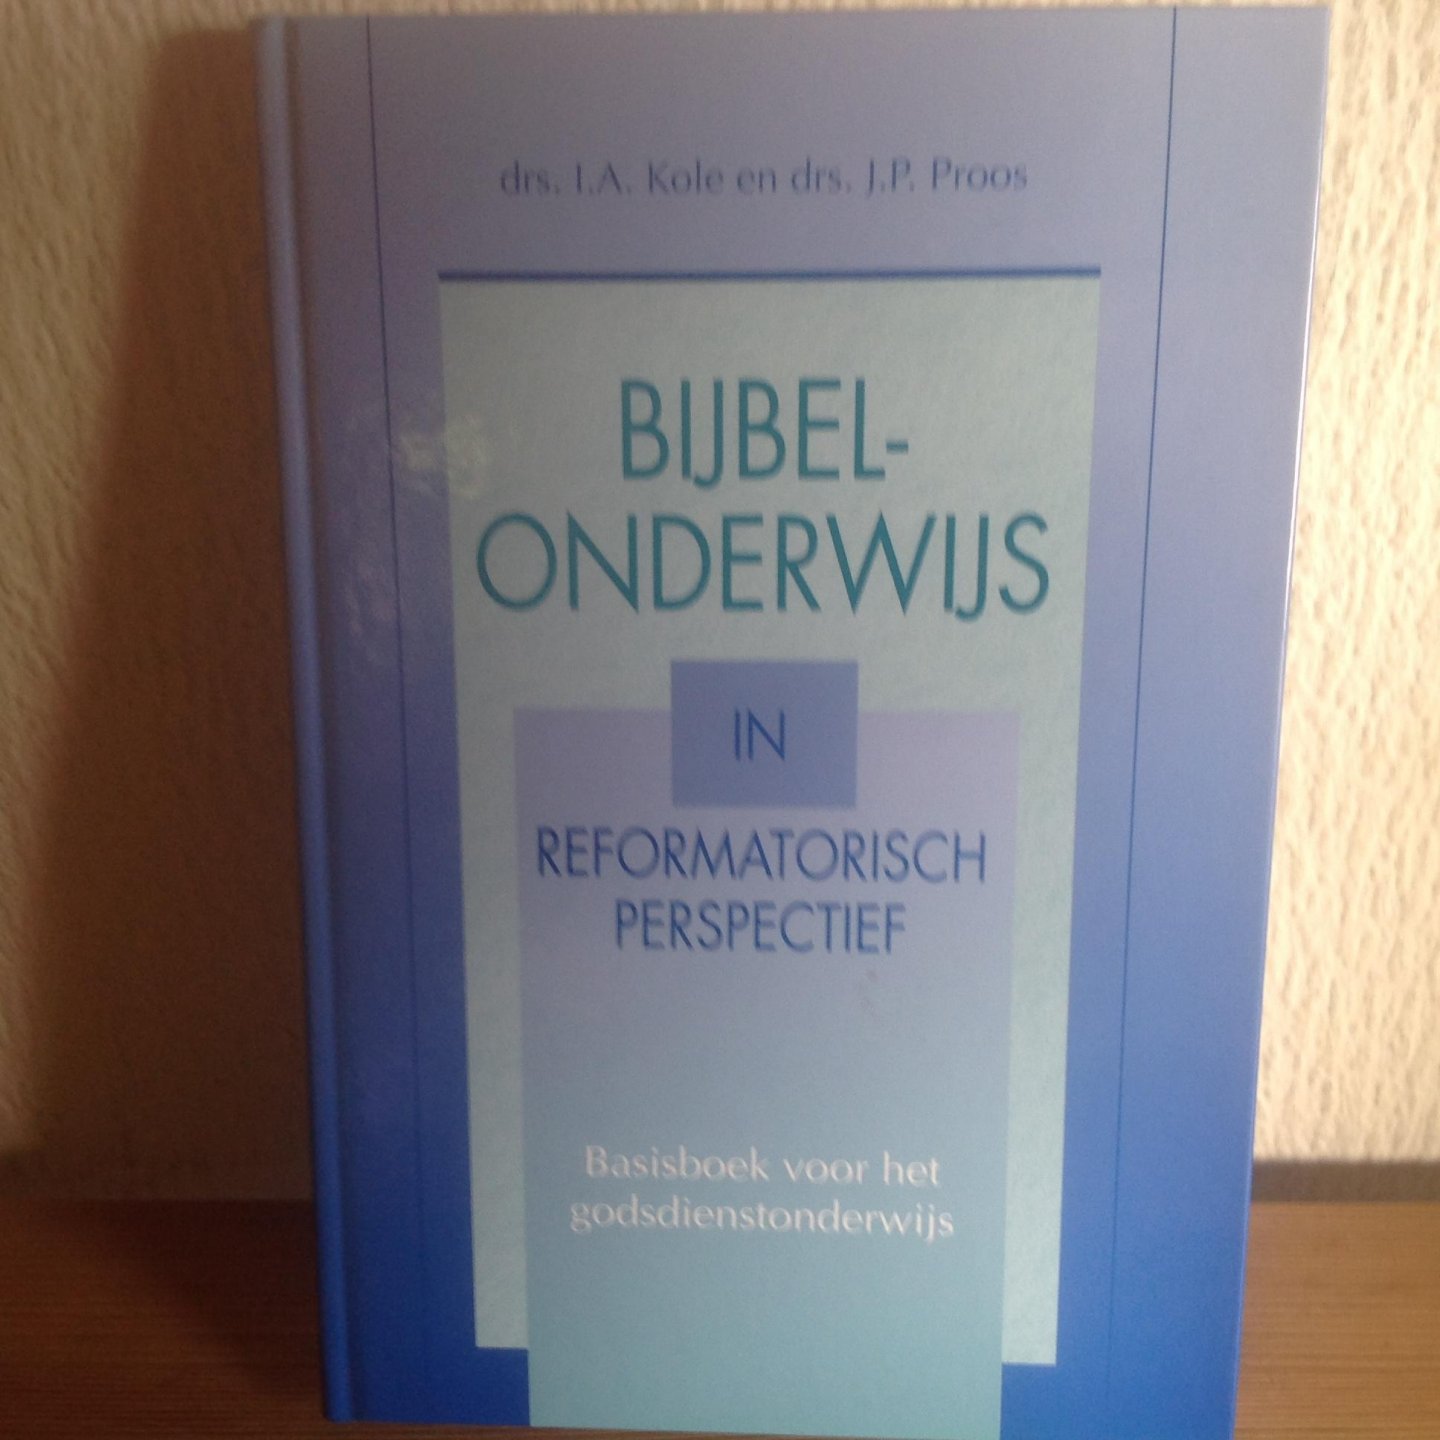 Proos, J.P. - Bijbelonderwijs in reformatorisch perspectief / basisboek voor het godsdienstonderwijs